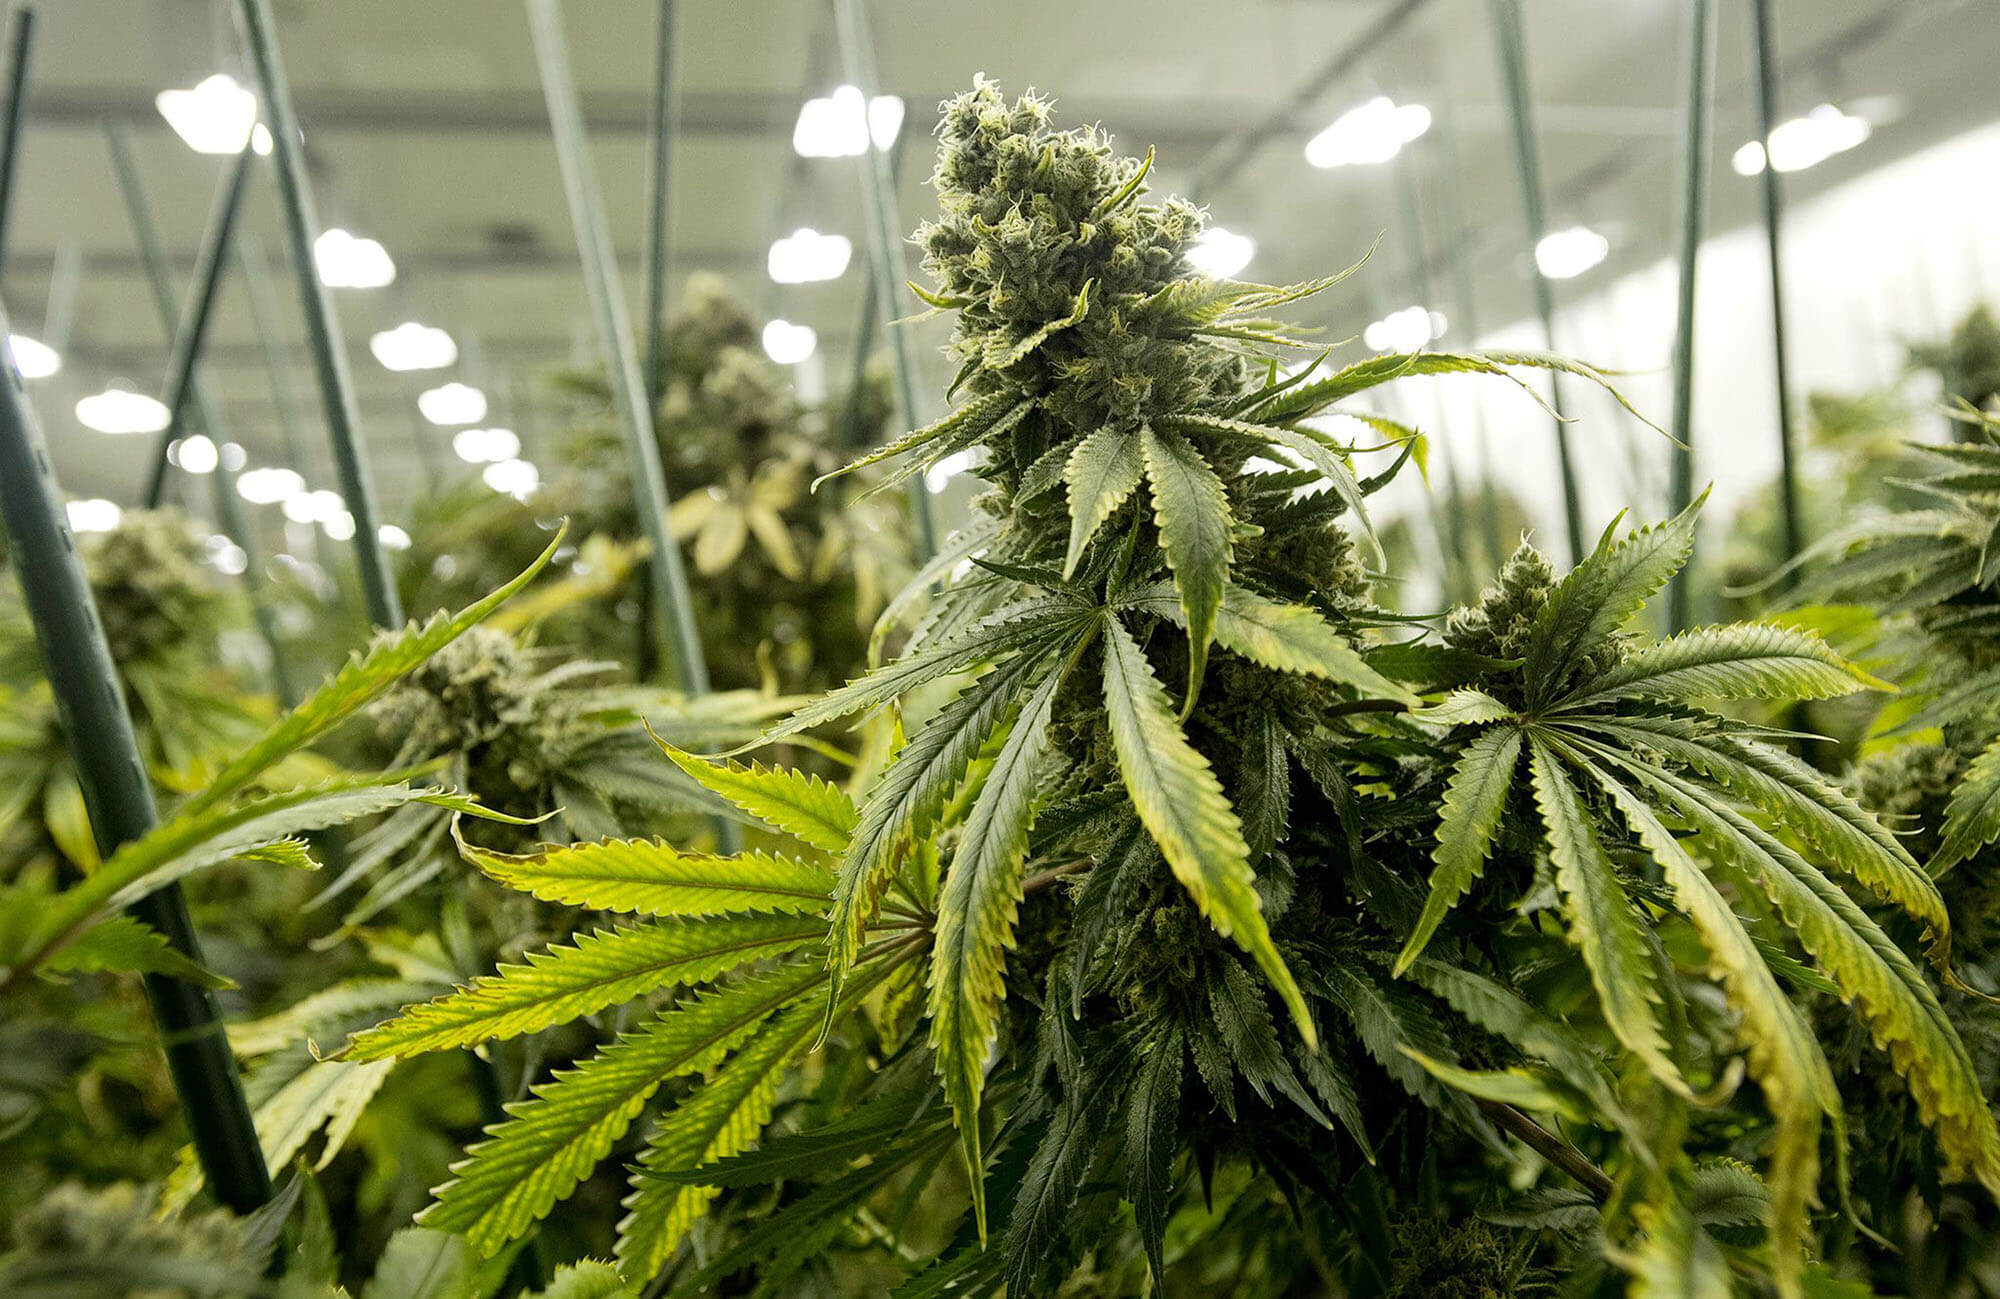 Cannabispflanzen in einer Plantage unter Neonlicht.